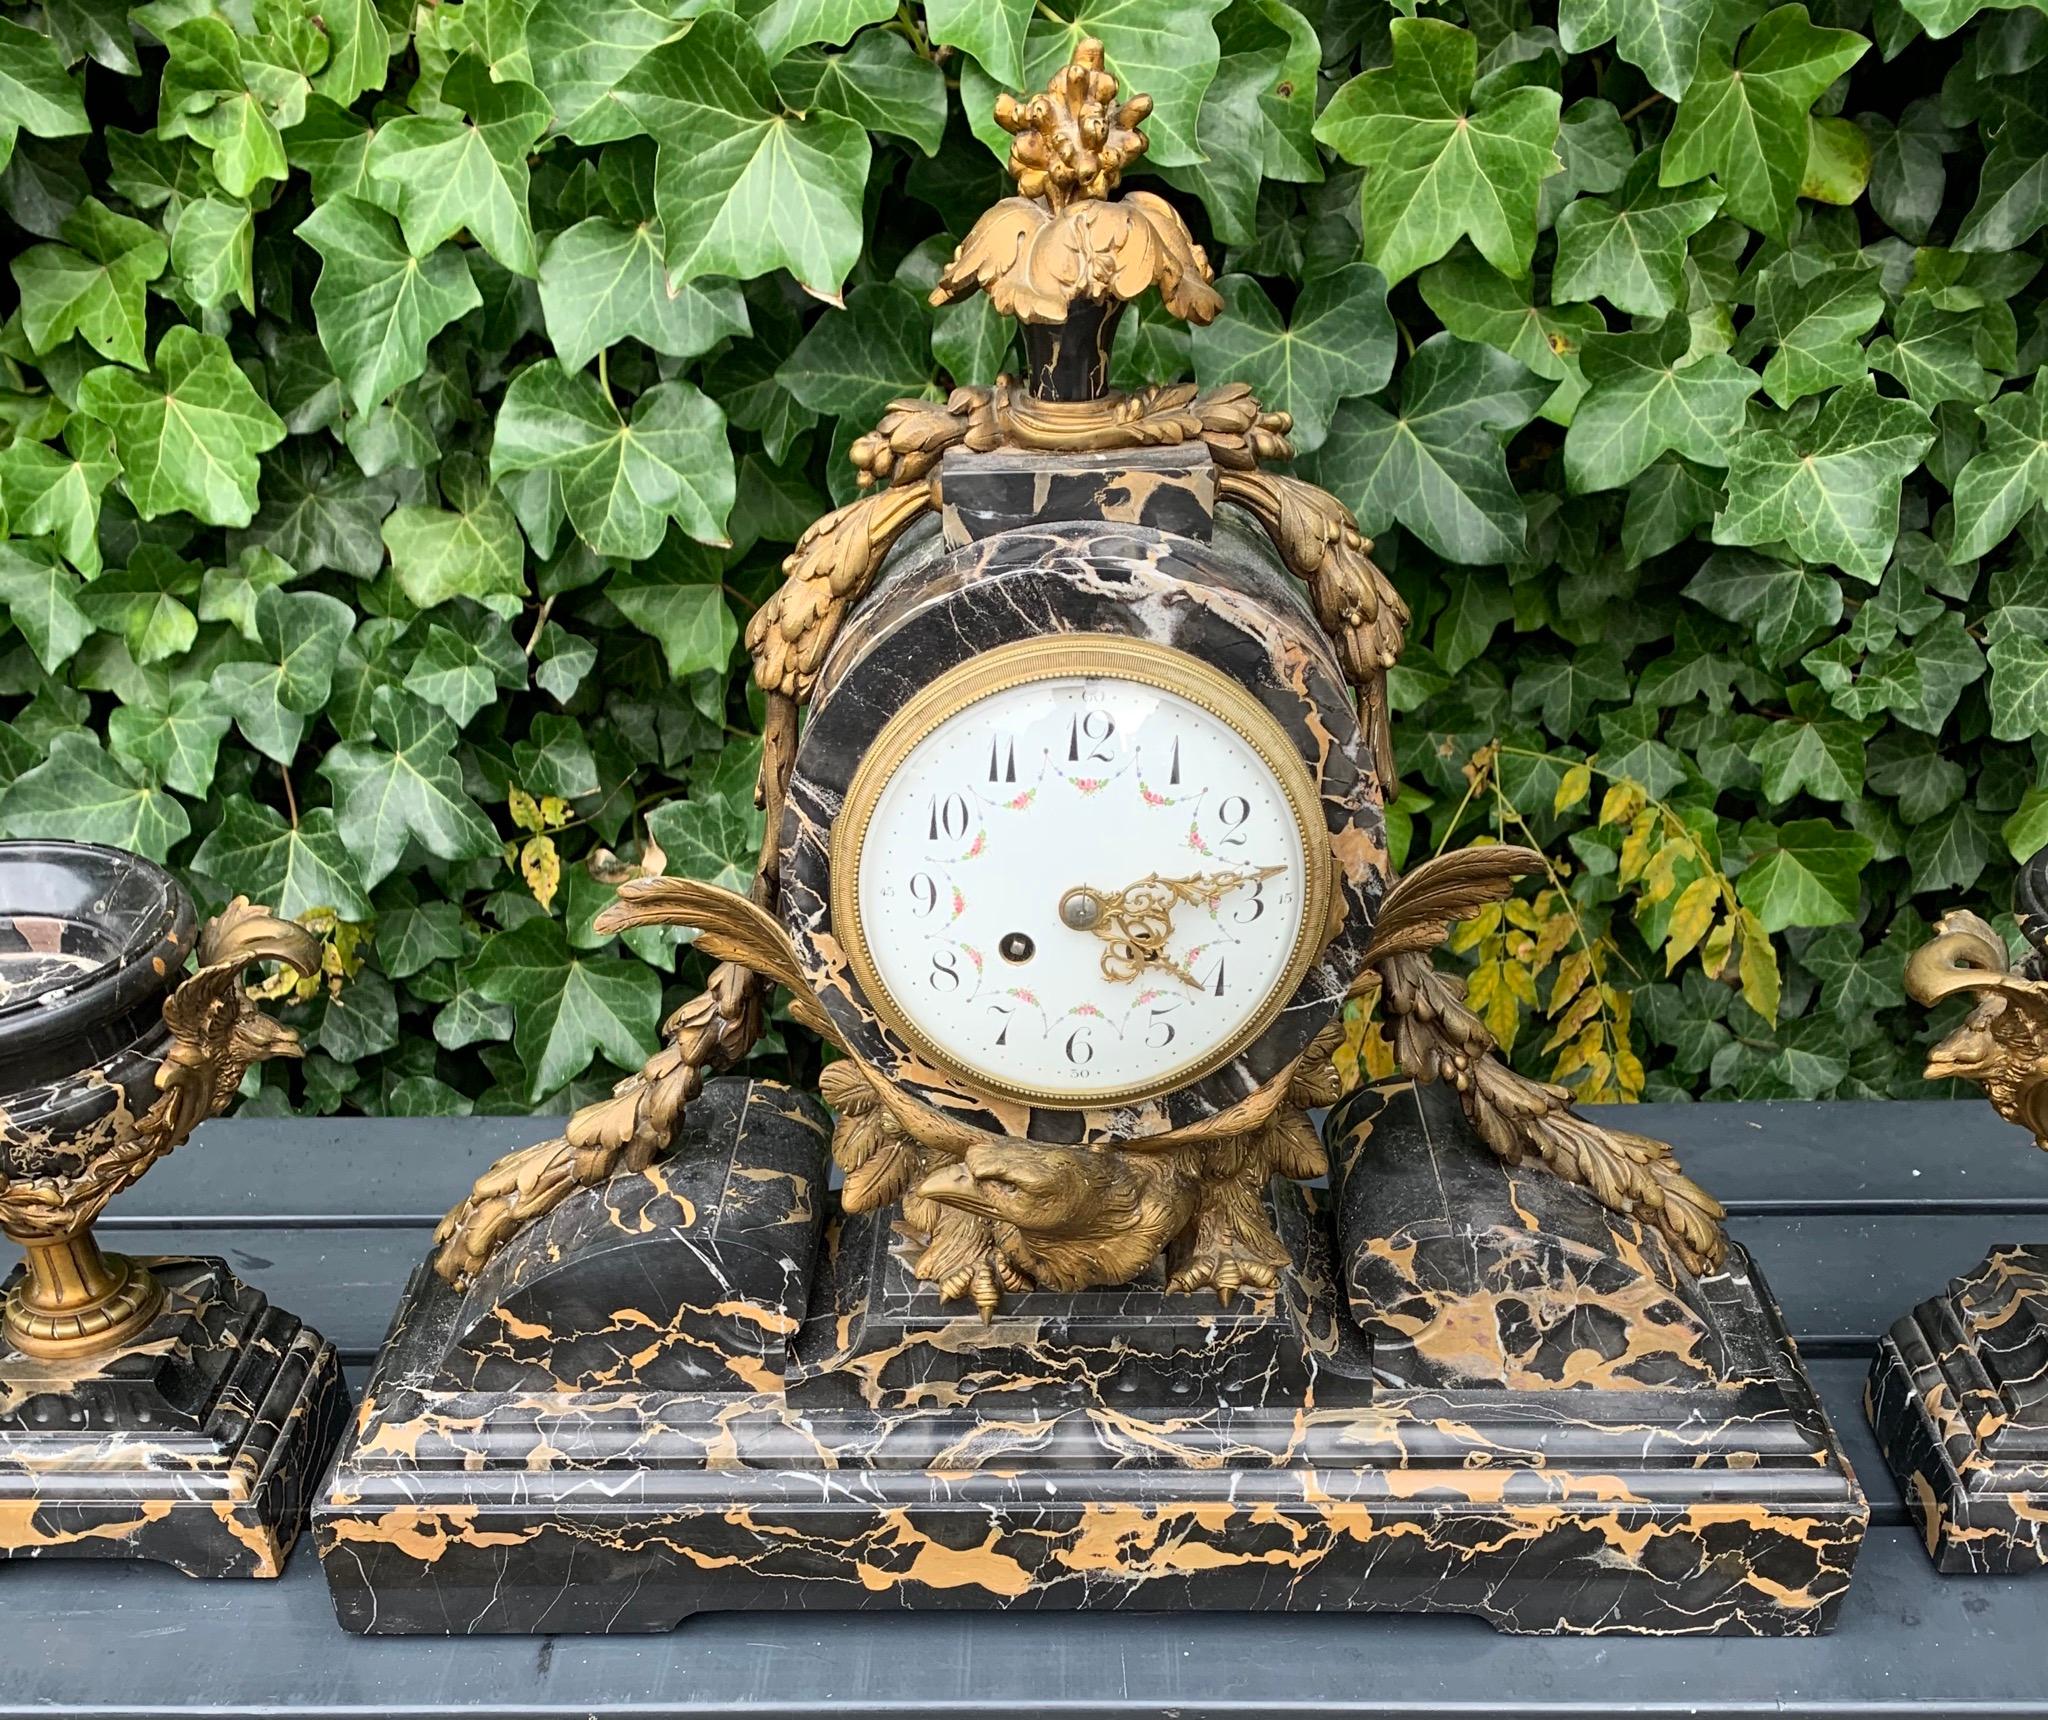 Unique et étonnante garniture d'horloge de cheminée du 19ème siècle.

Si vous êtes à la recherche d'une horloge unique et vraiment spectaculaire pour embellir votre espace de vie, cette œuvre de beauté pourrait bientôt être exposée sur votre